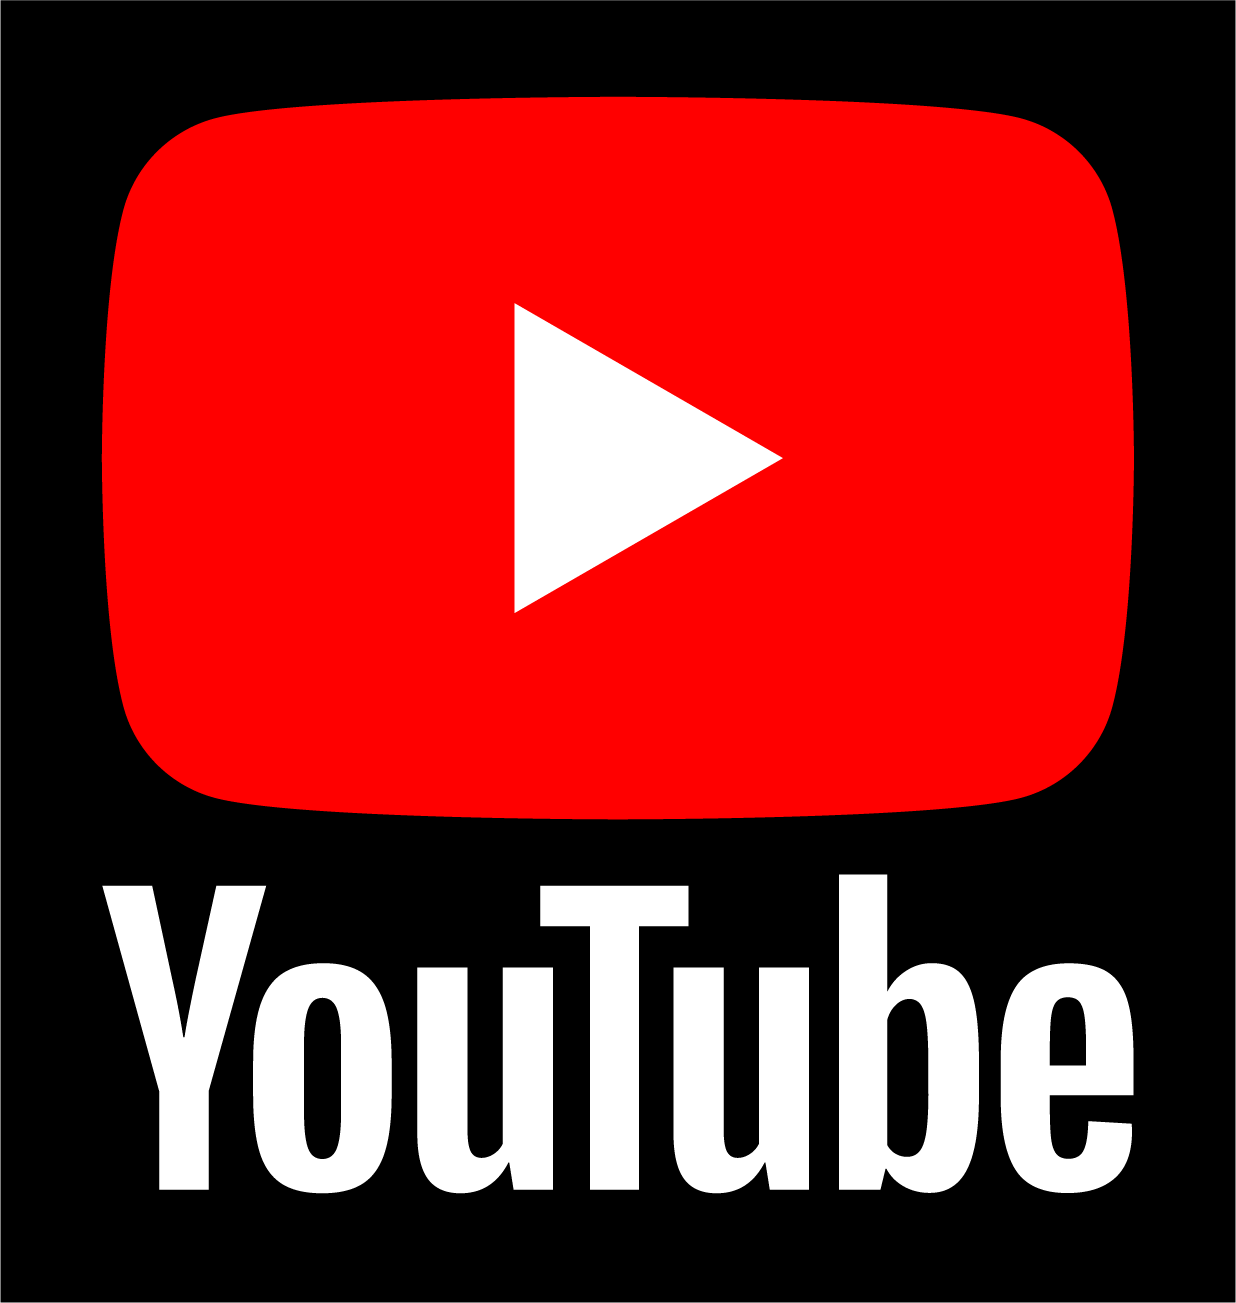 official youtube logo vector